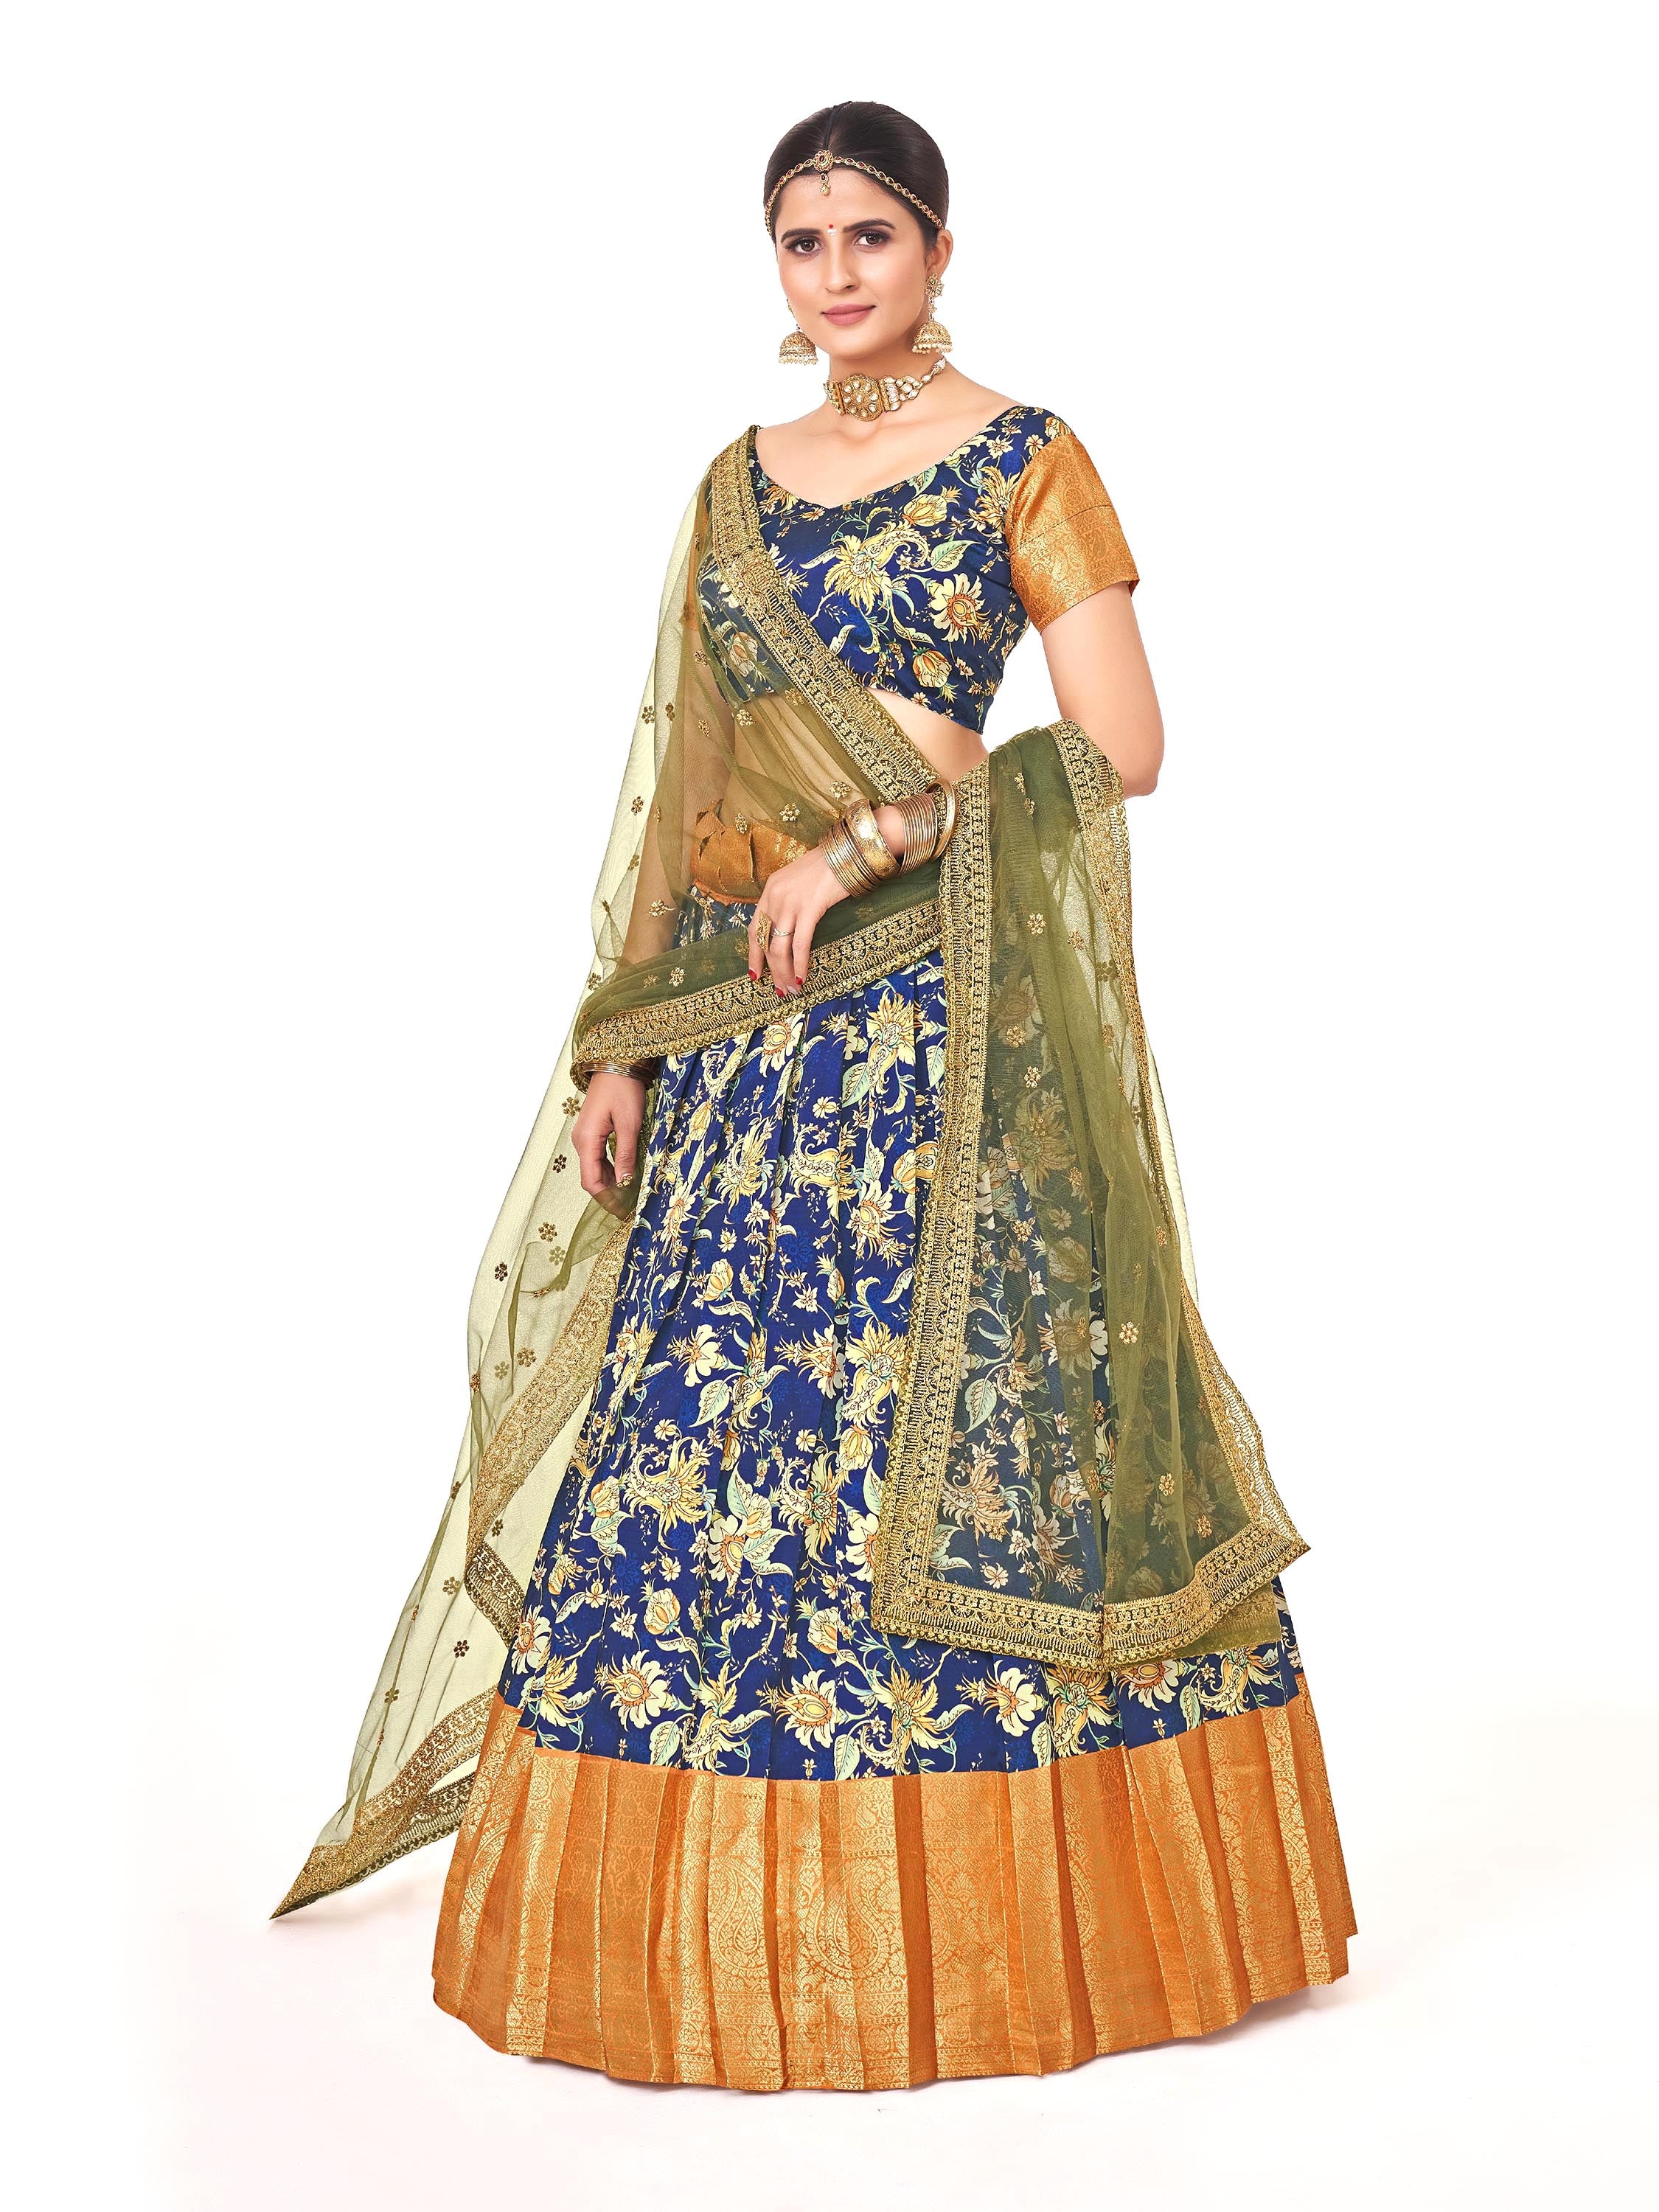 Navy Blue & Golden Weaving Work and Floral Printed Banarasi Silk Pattu Half Saree